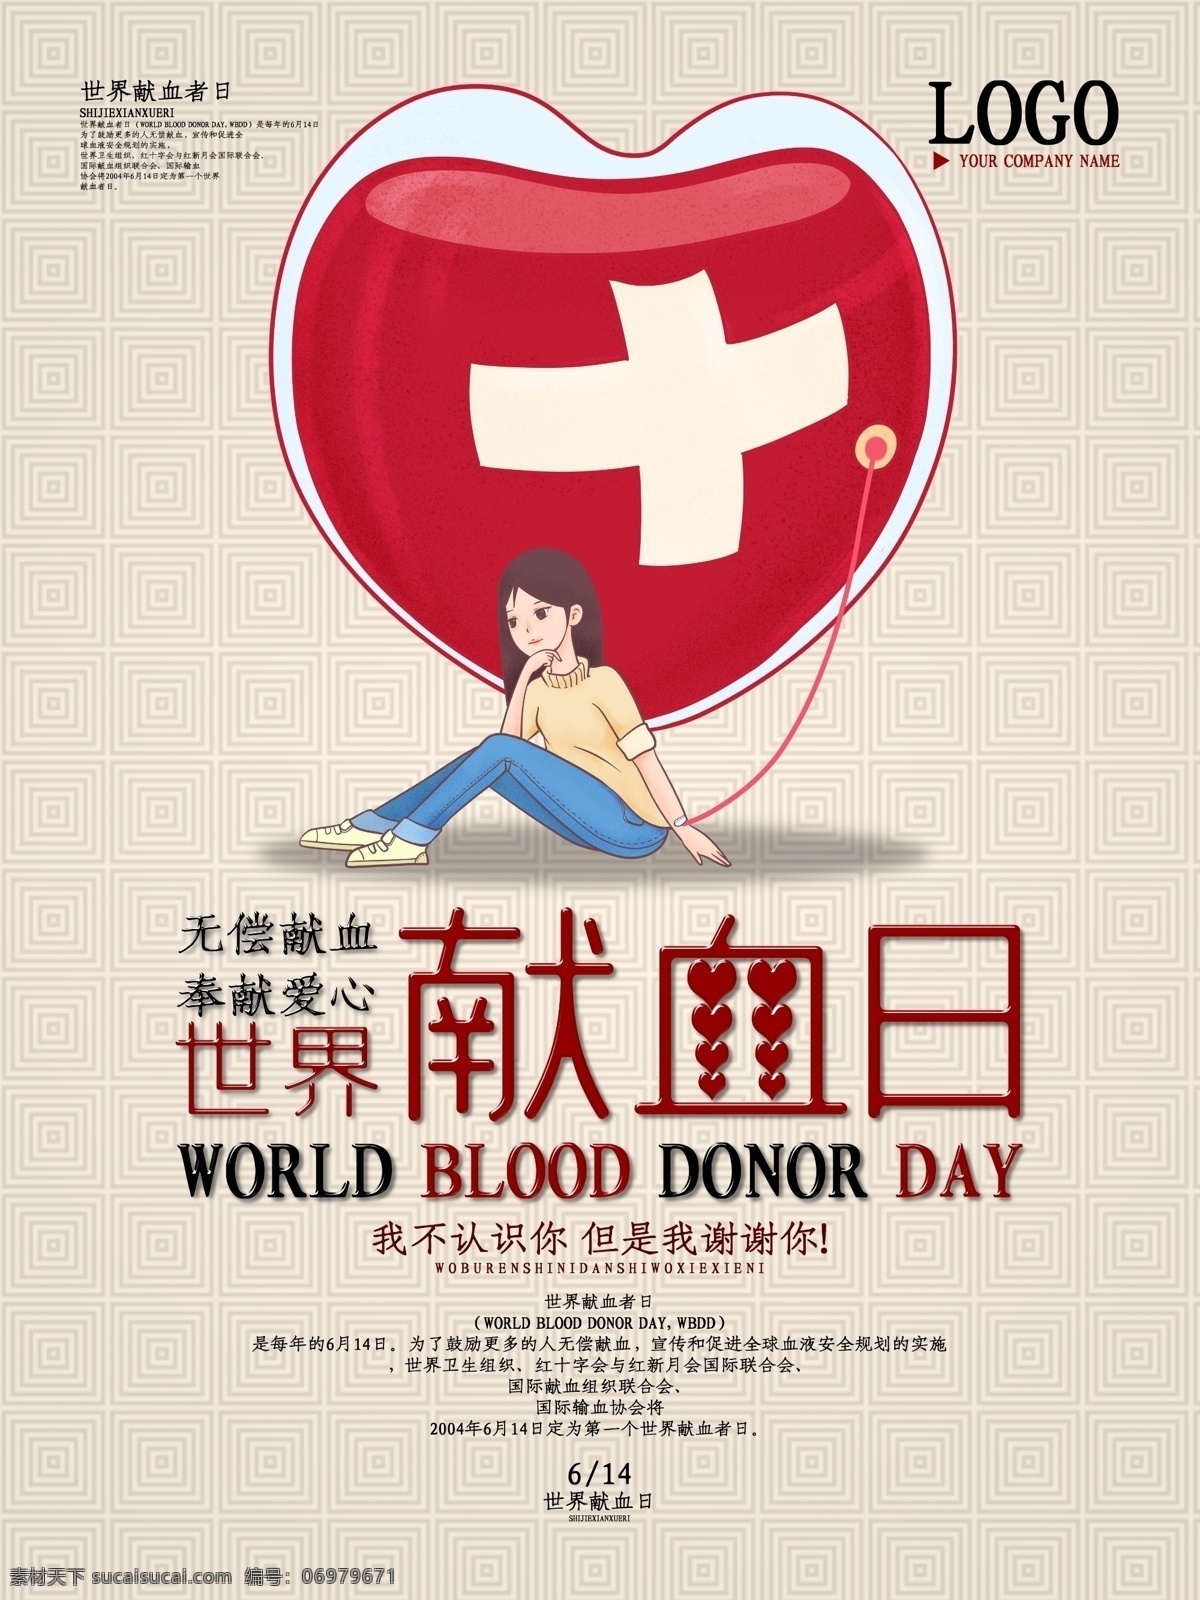 创意 字体 世界 献血 日 节日 海报 创意字体 世界献血日 节日海报 爱心